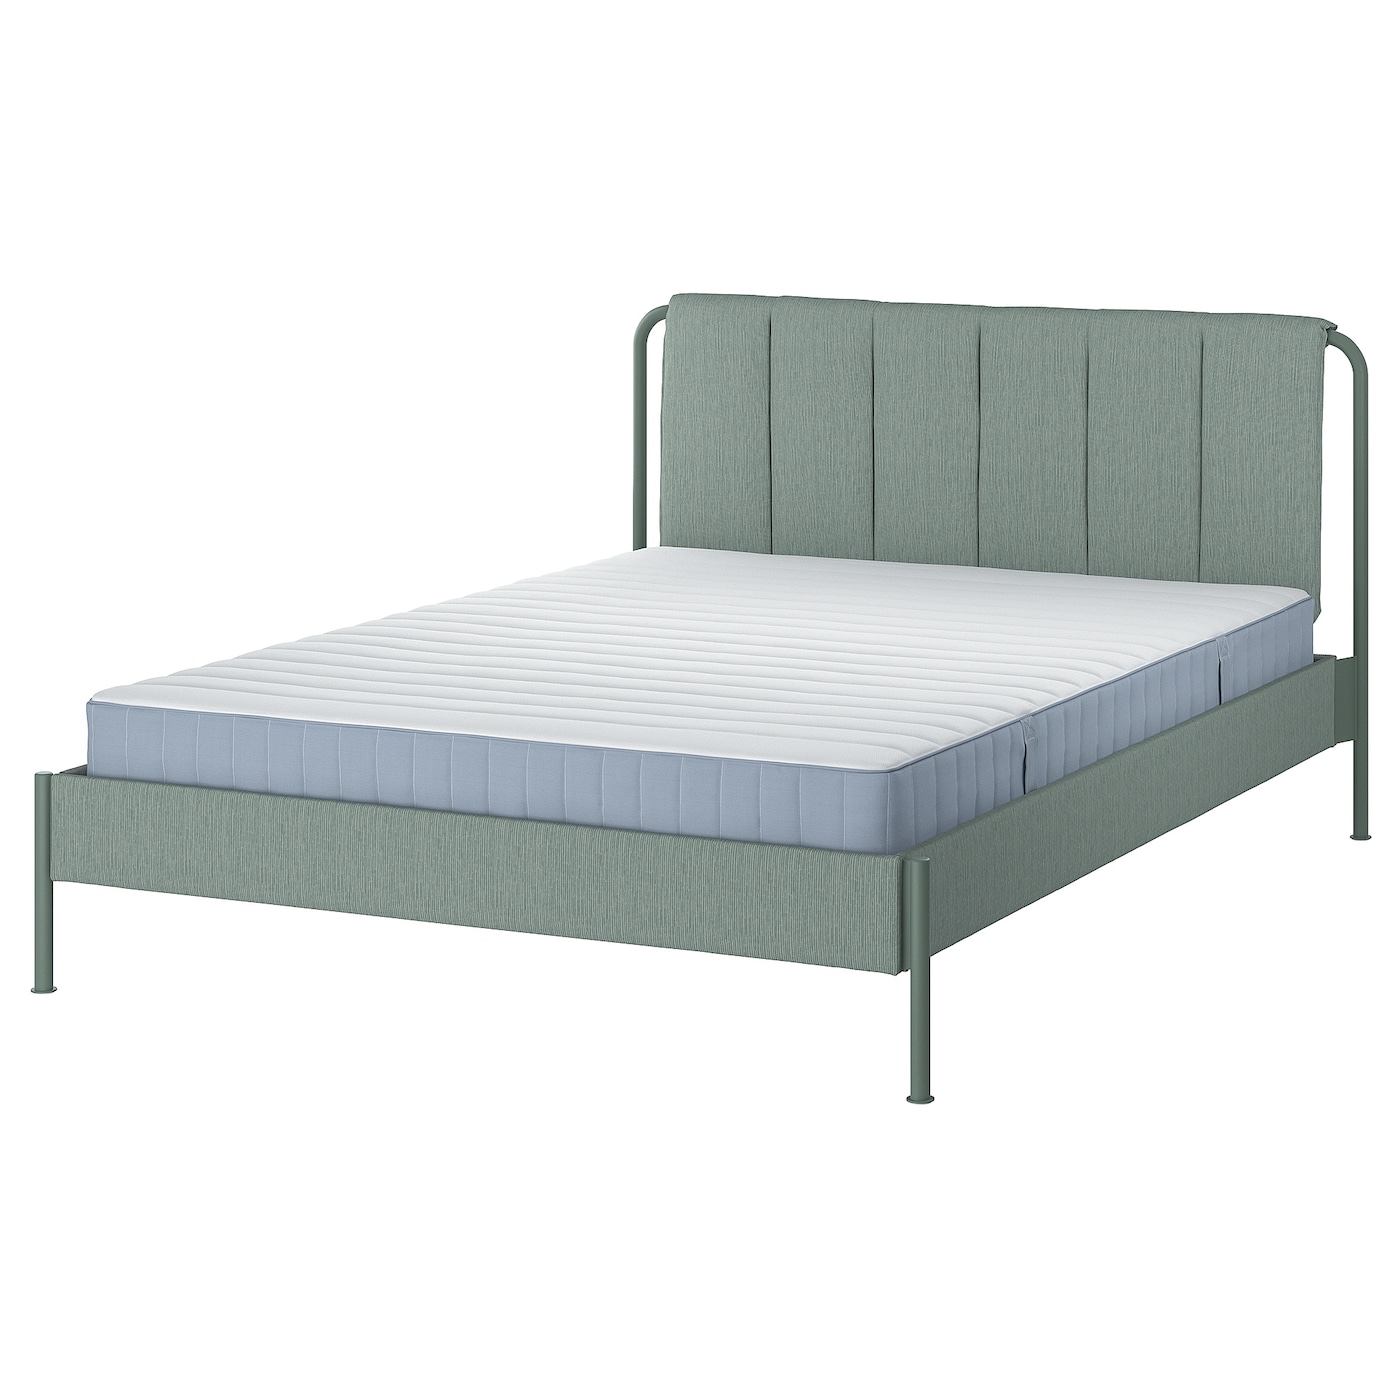 Каркас кровати мягкий с матрасом - IKEA TÄLLÅSEN/TALLASEN, 200х160 см, светло-зеленый, ТЭЛЛАСОН ИКЕА